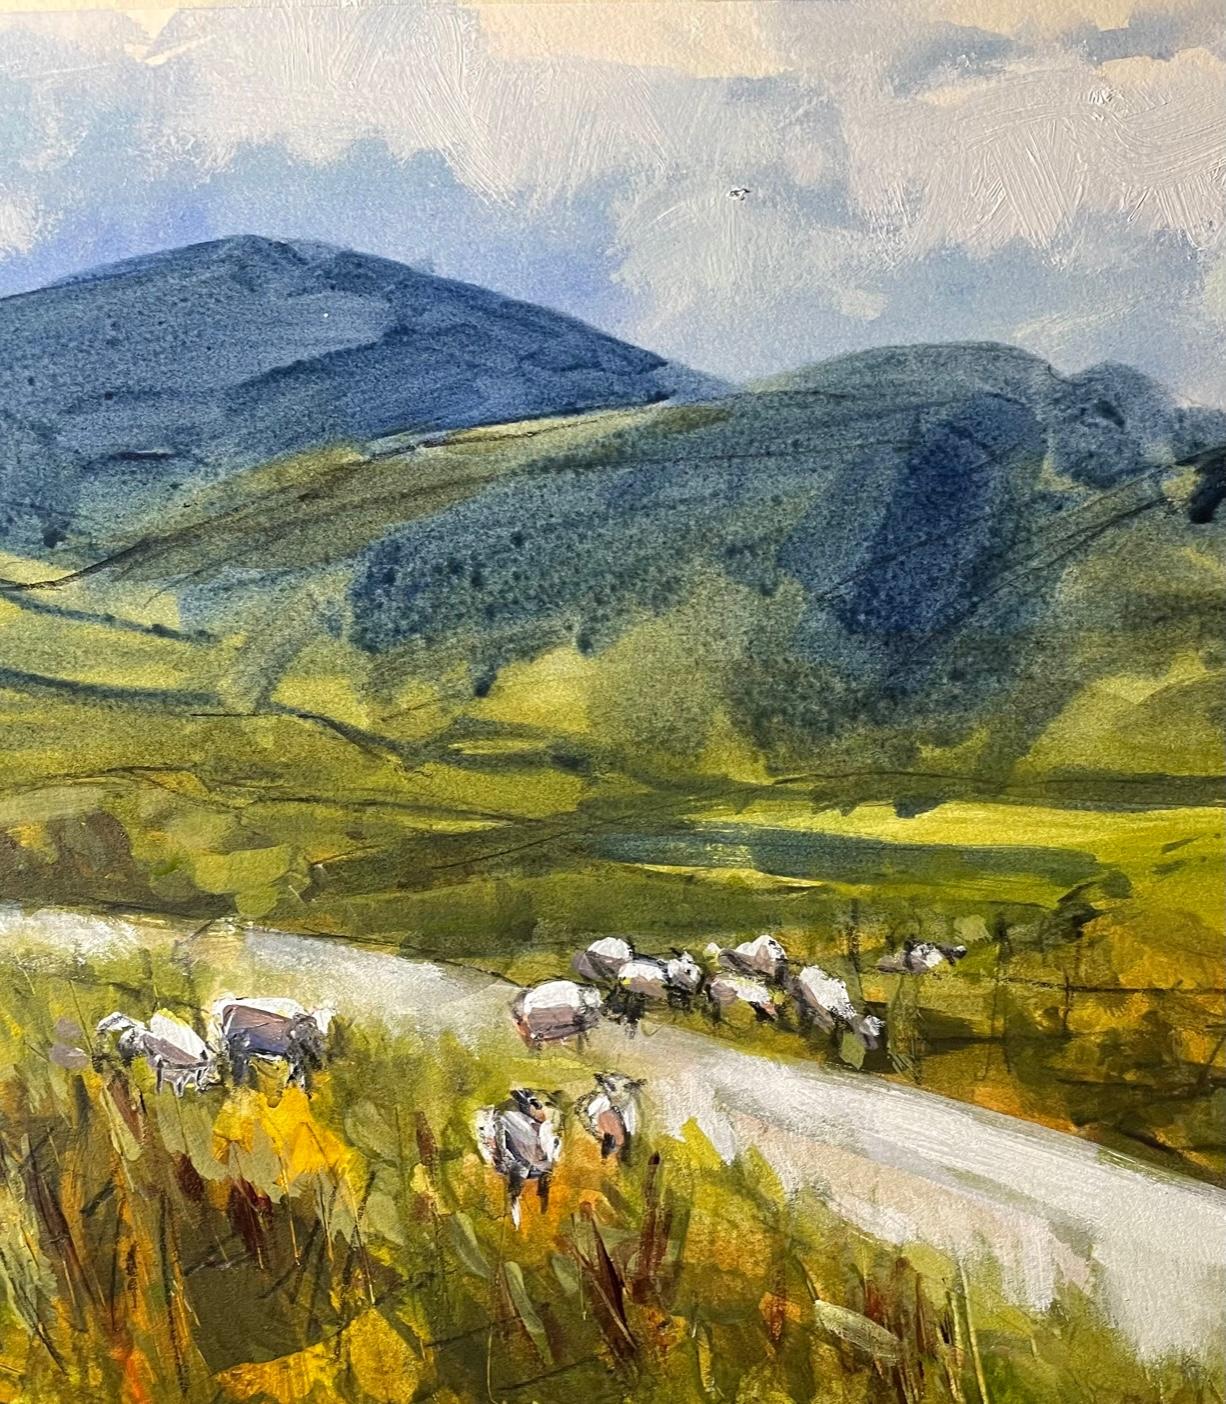 Wandering sheep Ben Mohr, sheep art, shepherd art, nature art, hill art - Painting by Natalie Bird